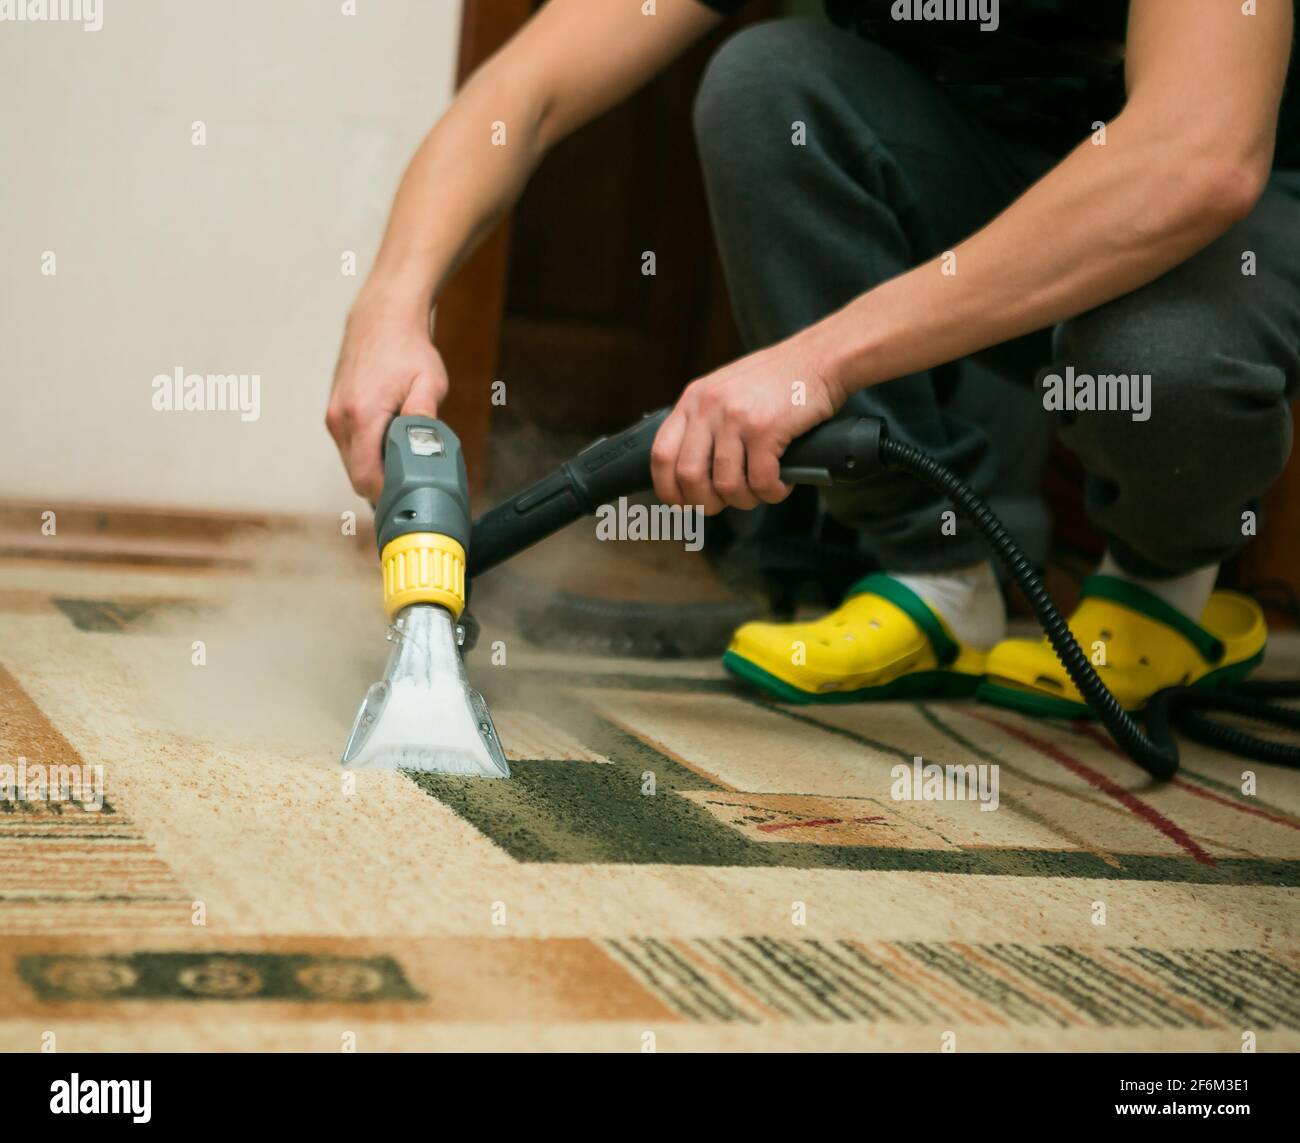 https://c8.alamy.com/compes/2f6m3e1/el-proceso-de-limpieza-de-alfombras-con-una-aspiradora-de-vapor-un-empleado-de-una-empresa-de-limpieza-limpia-la-alfombra-con-vapor-2f6m3e1.jpg